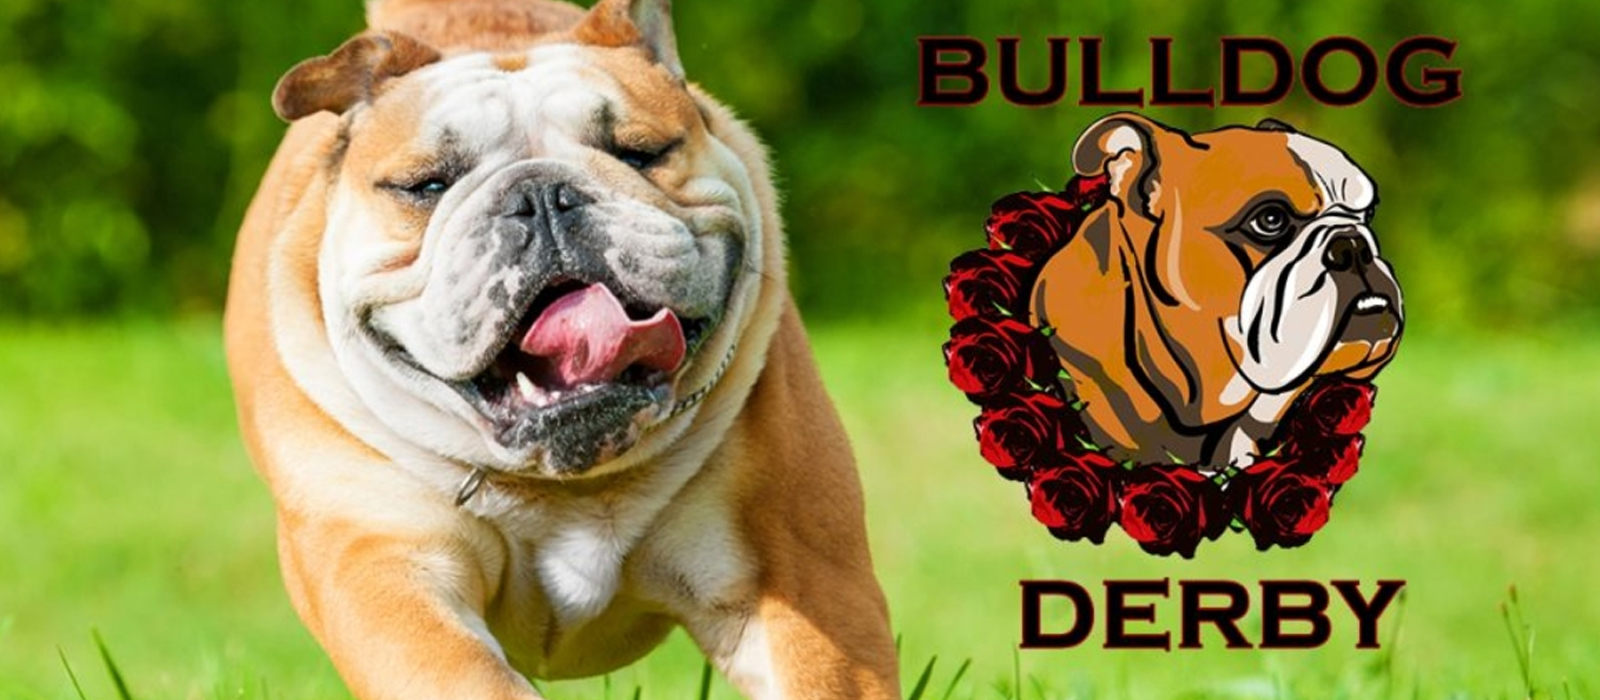 bulldog derby